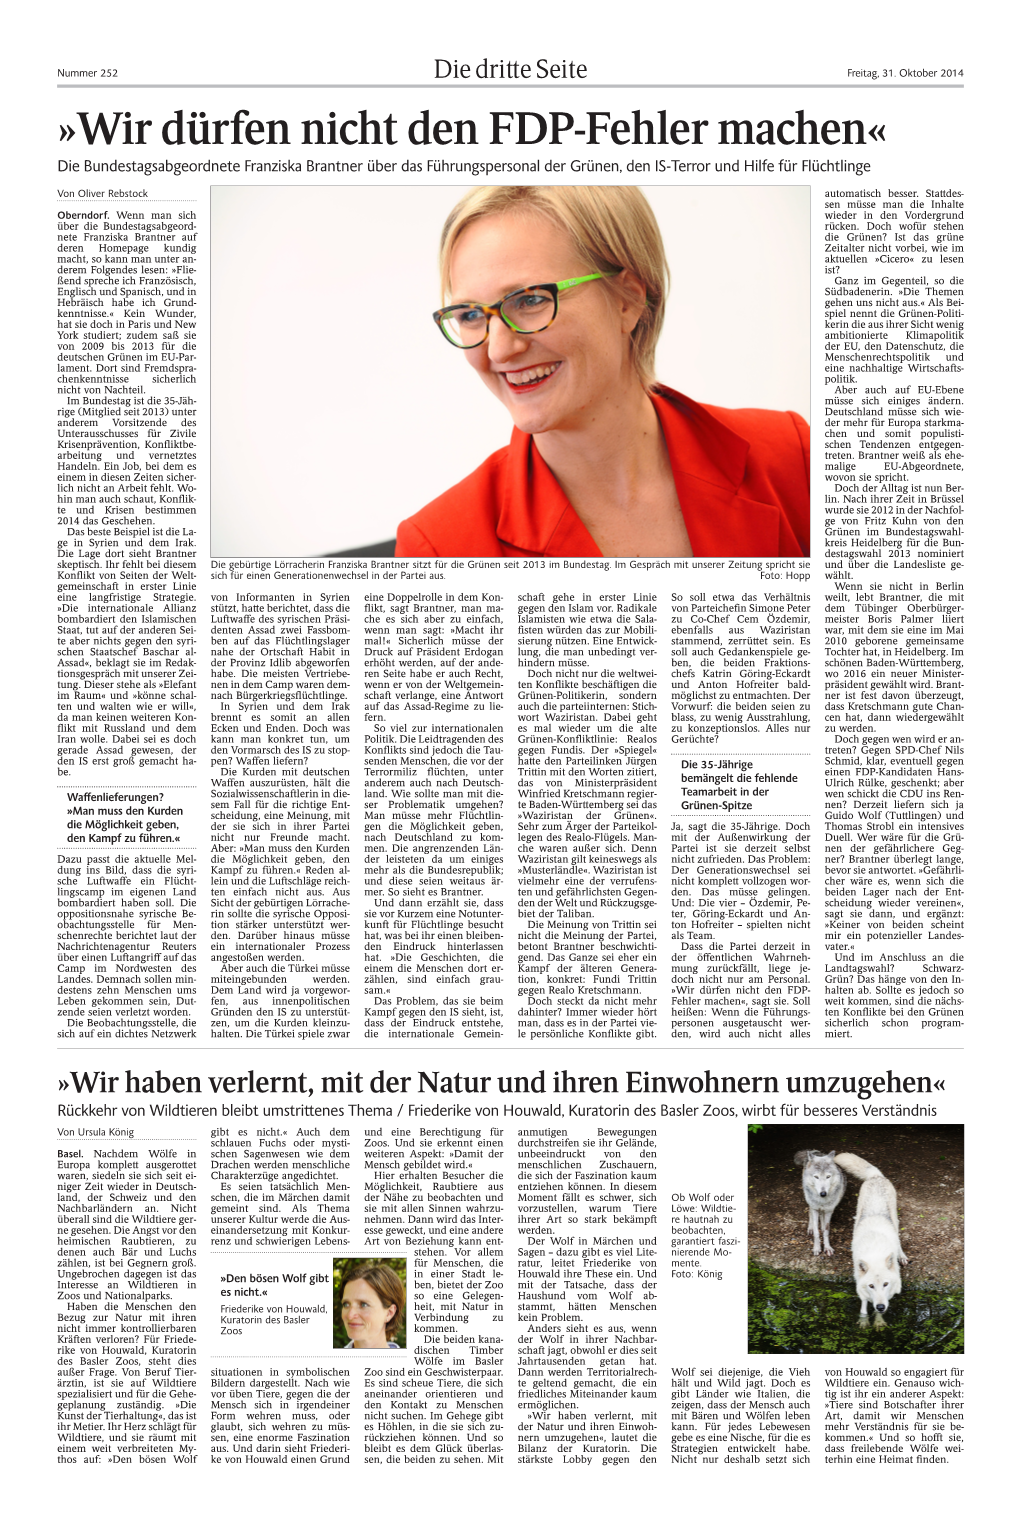 Wir Dürfen Nicht Den FDP-Fehler Machen« Die Bundestagsabgeordnete Franziska Brantner Über Das Führungspersonal Der Grünen, Den IS-Terror Und Hilfe Für Flüchtlinge